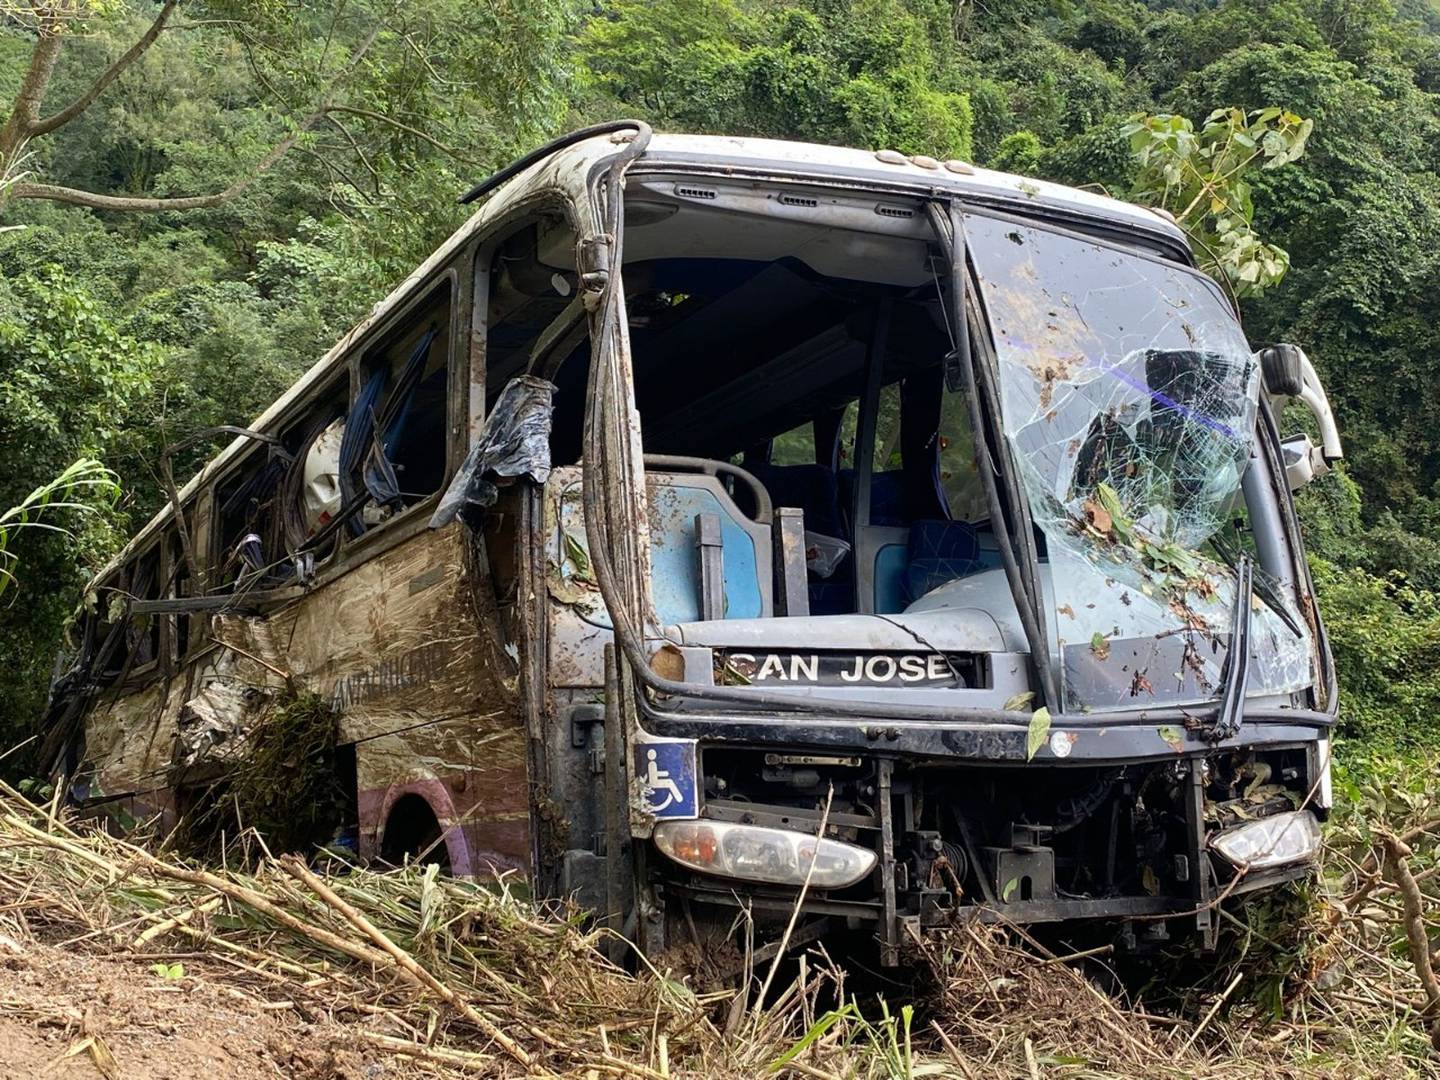 A eso de las 11:20 a. m de este lunes el bus sinistrado en Cambronero volvía a la calzada gracias al remolque con grúas. Foto: Cortesía Pegando Porte.